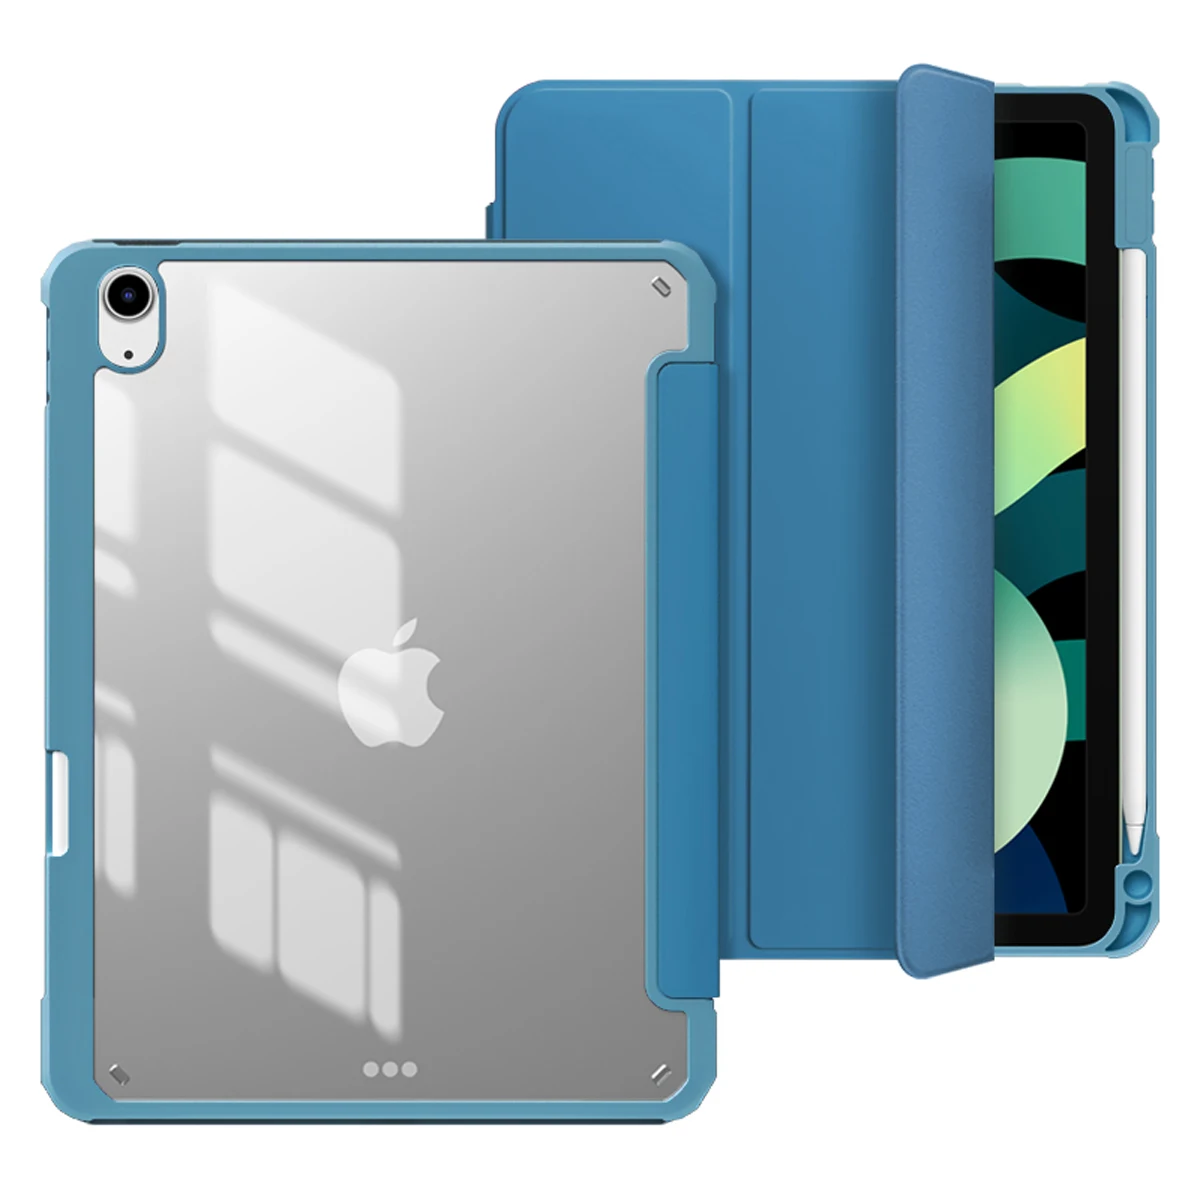 

Чехол ZOYU для iPad Air 4 10,9 дюйма, прозрачная задняя крышка со встроенным держателем для карандашей, чехол для iPad Air 4-го поколения